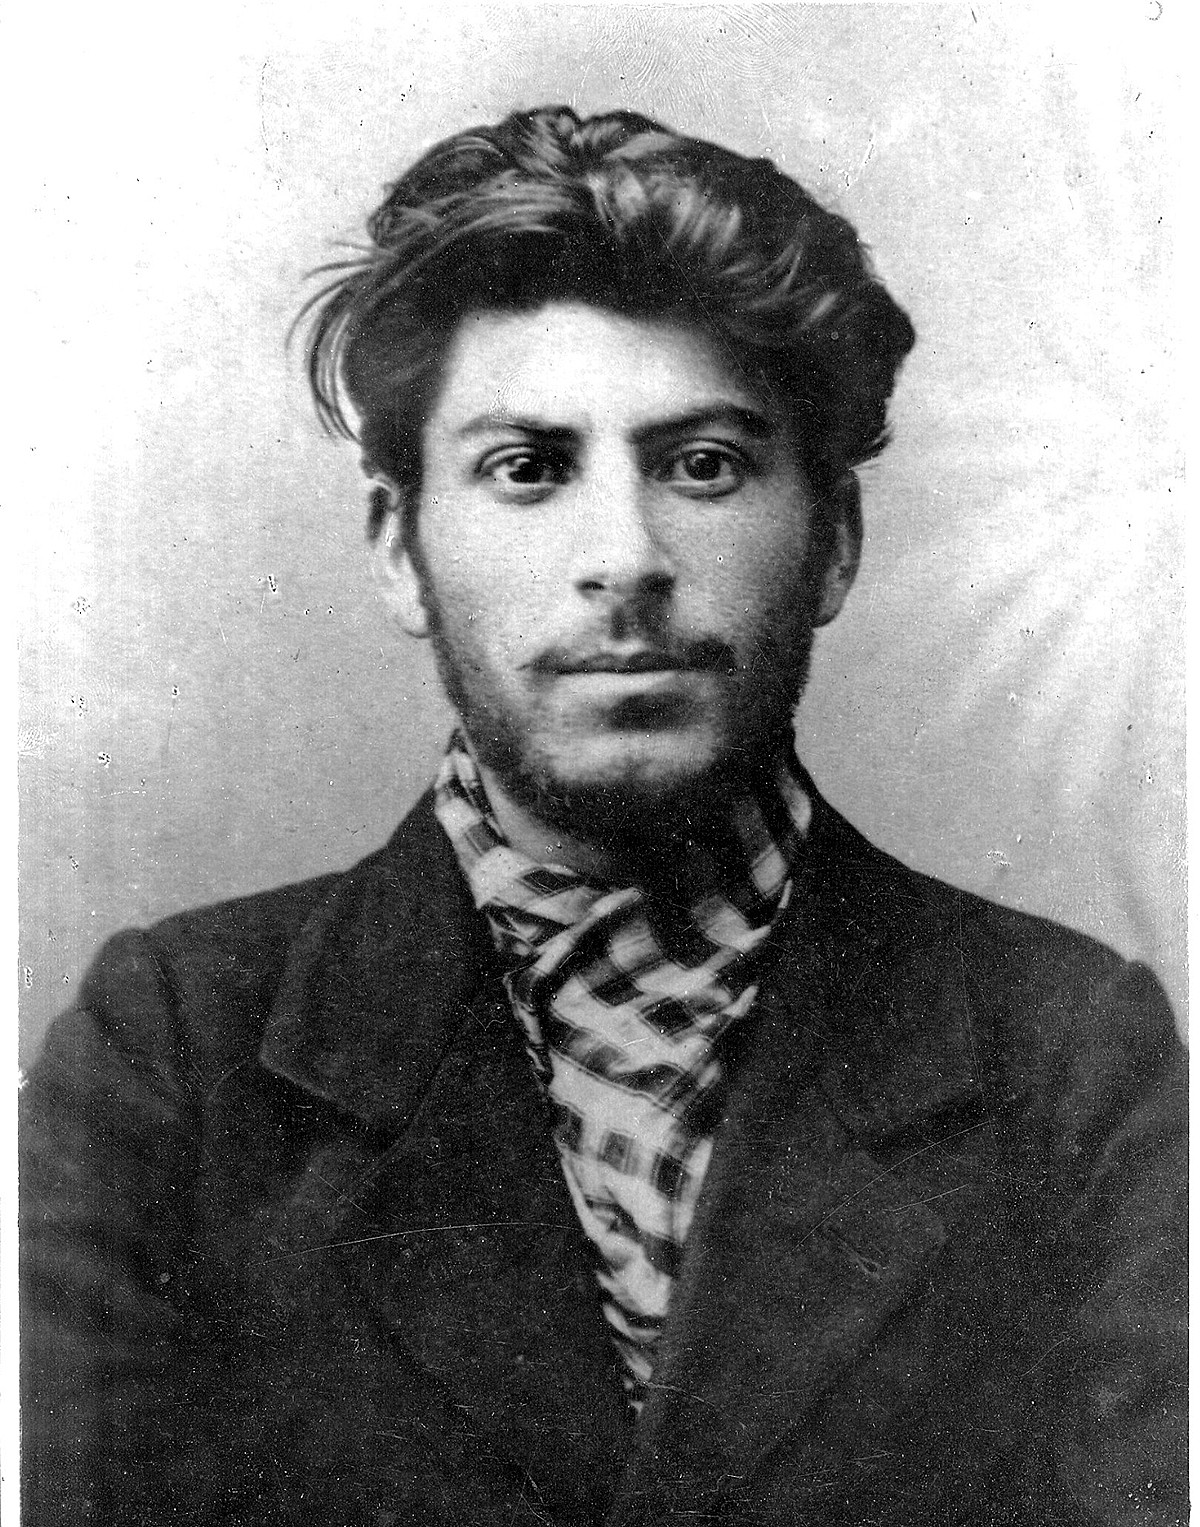 Stalin in 1902